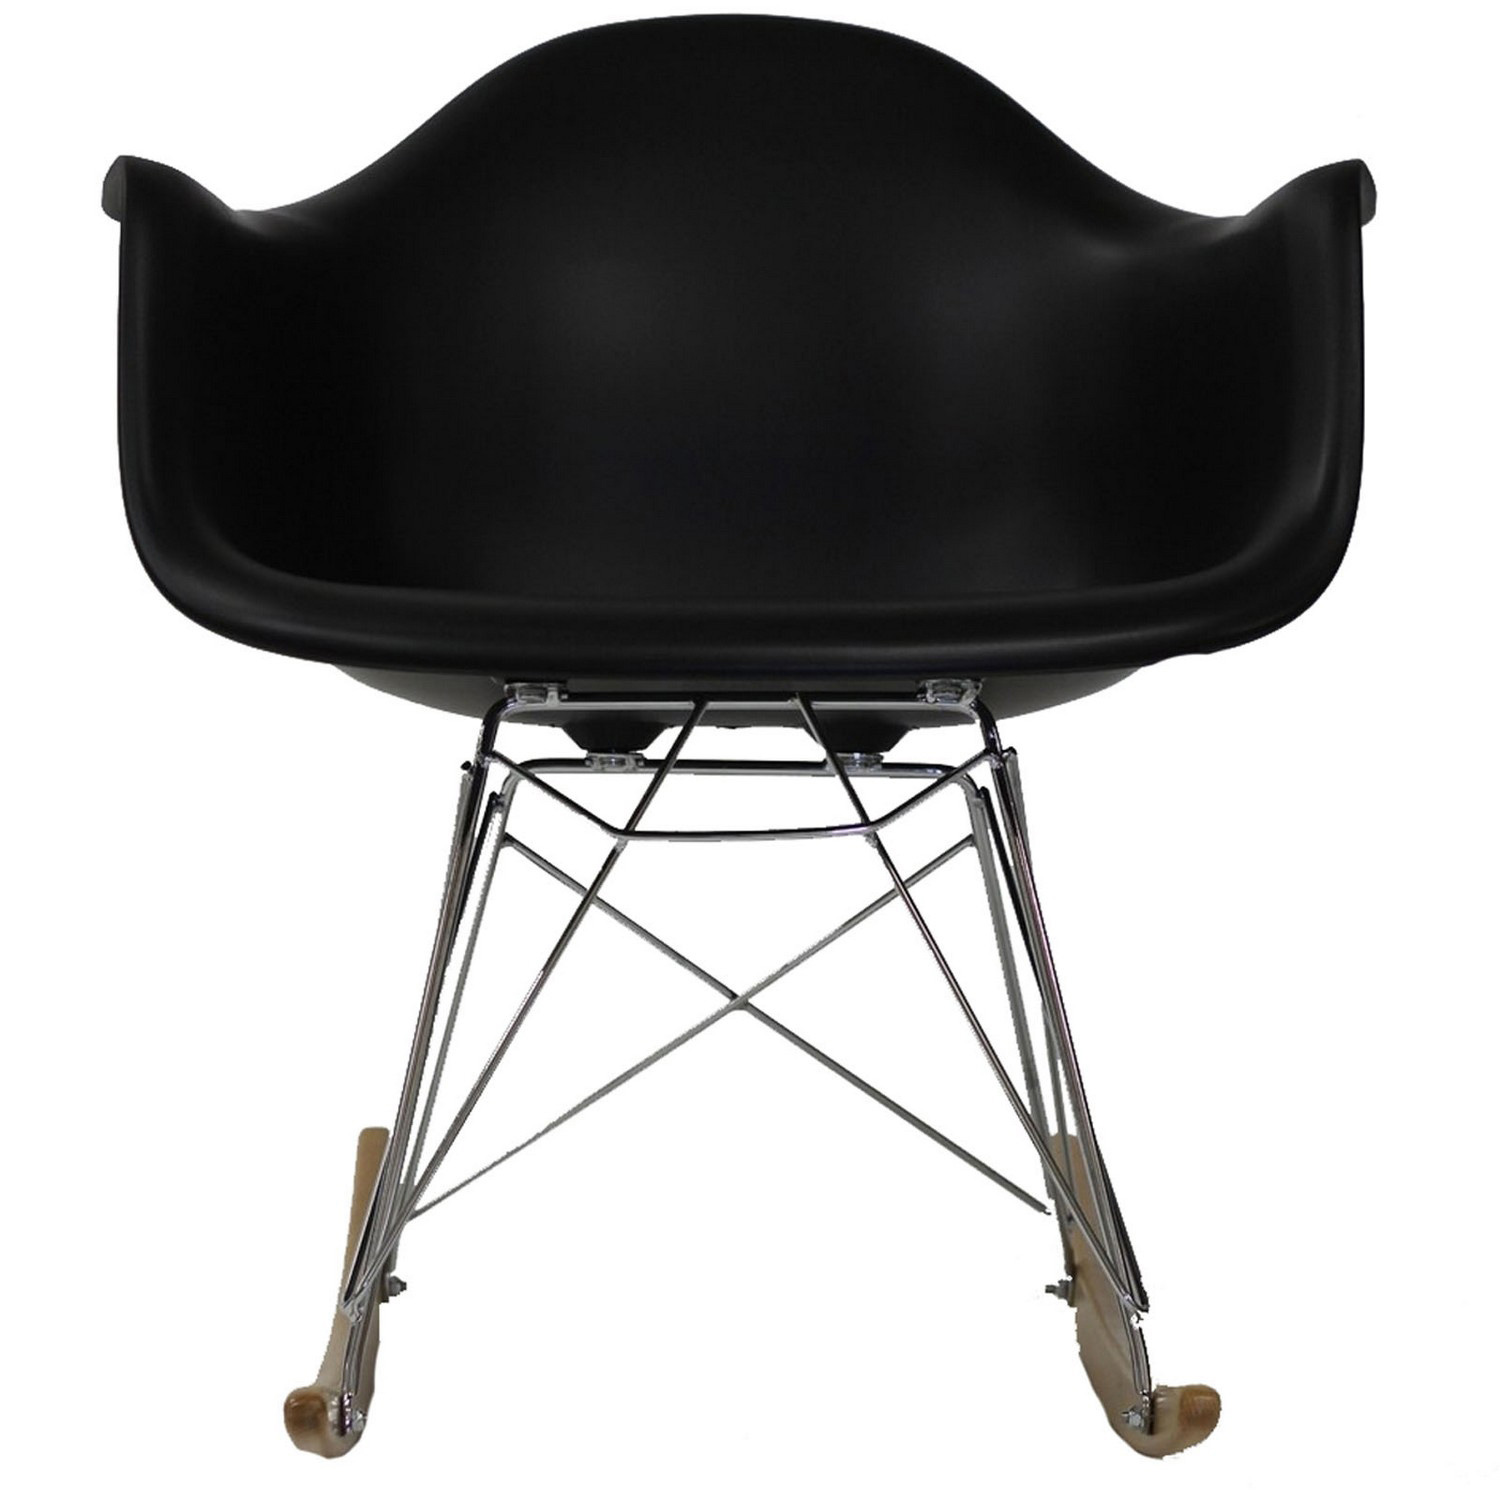 Modway Rocker Lounge Chair - Black